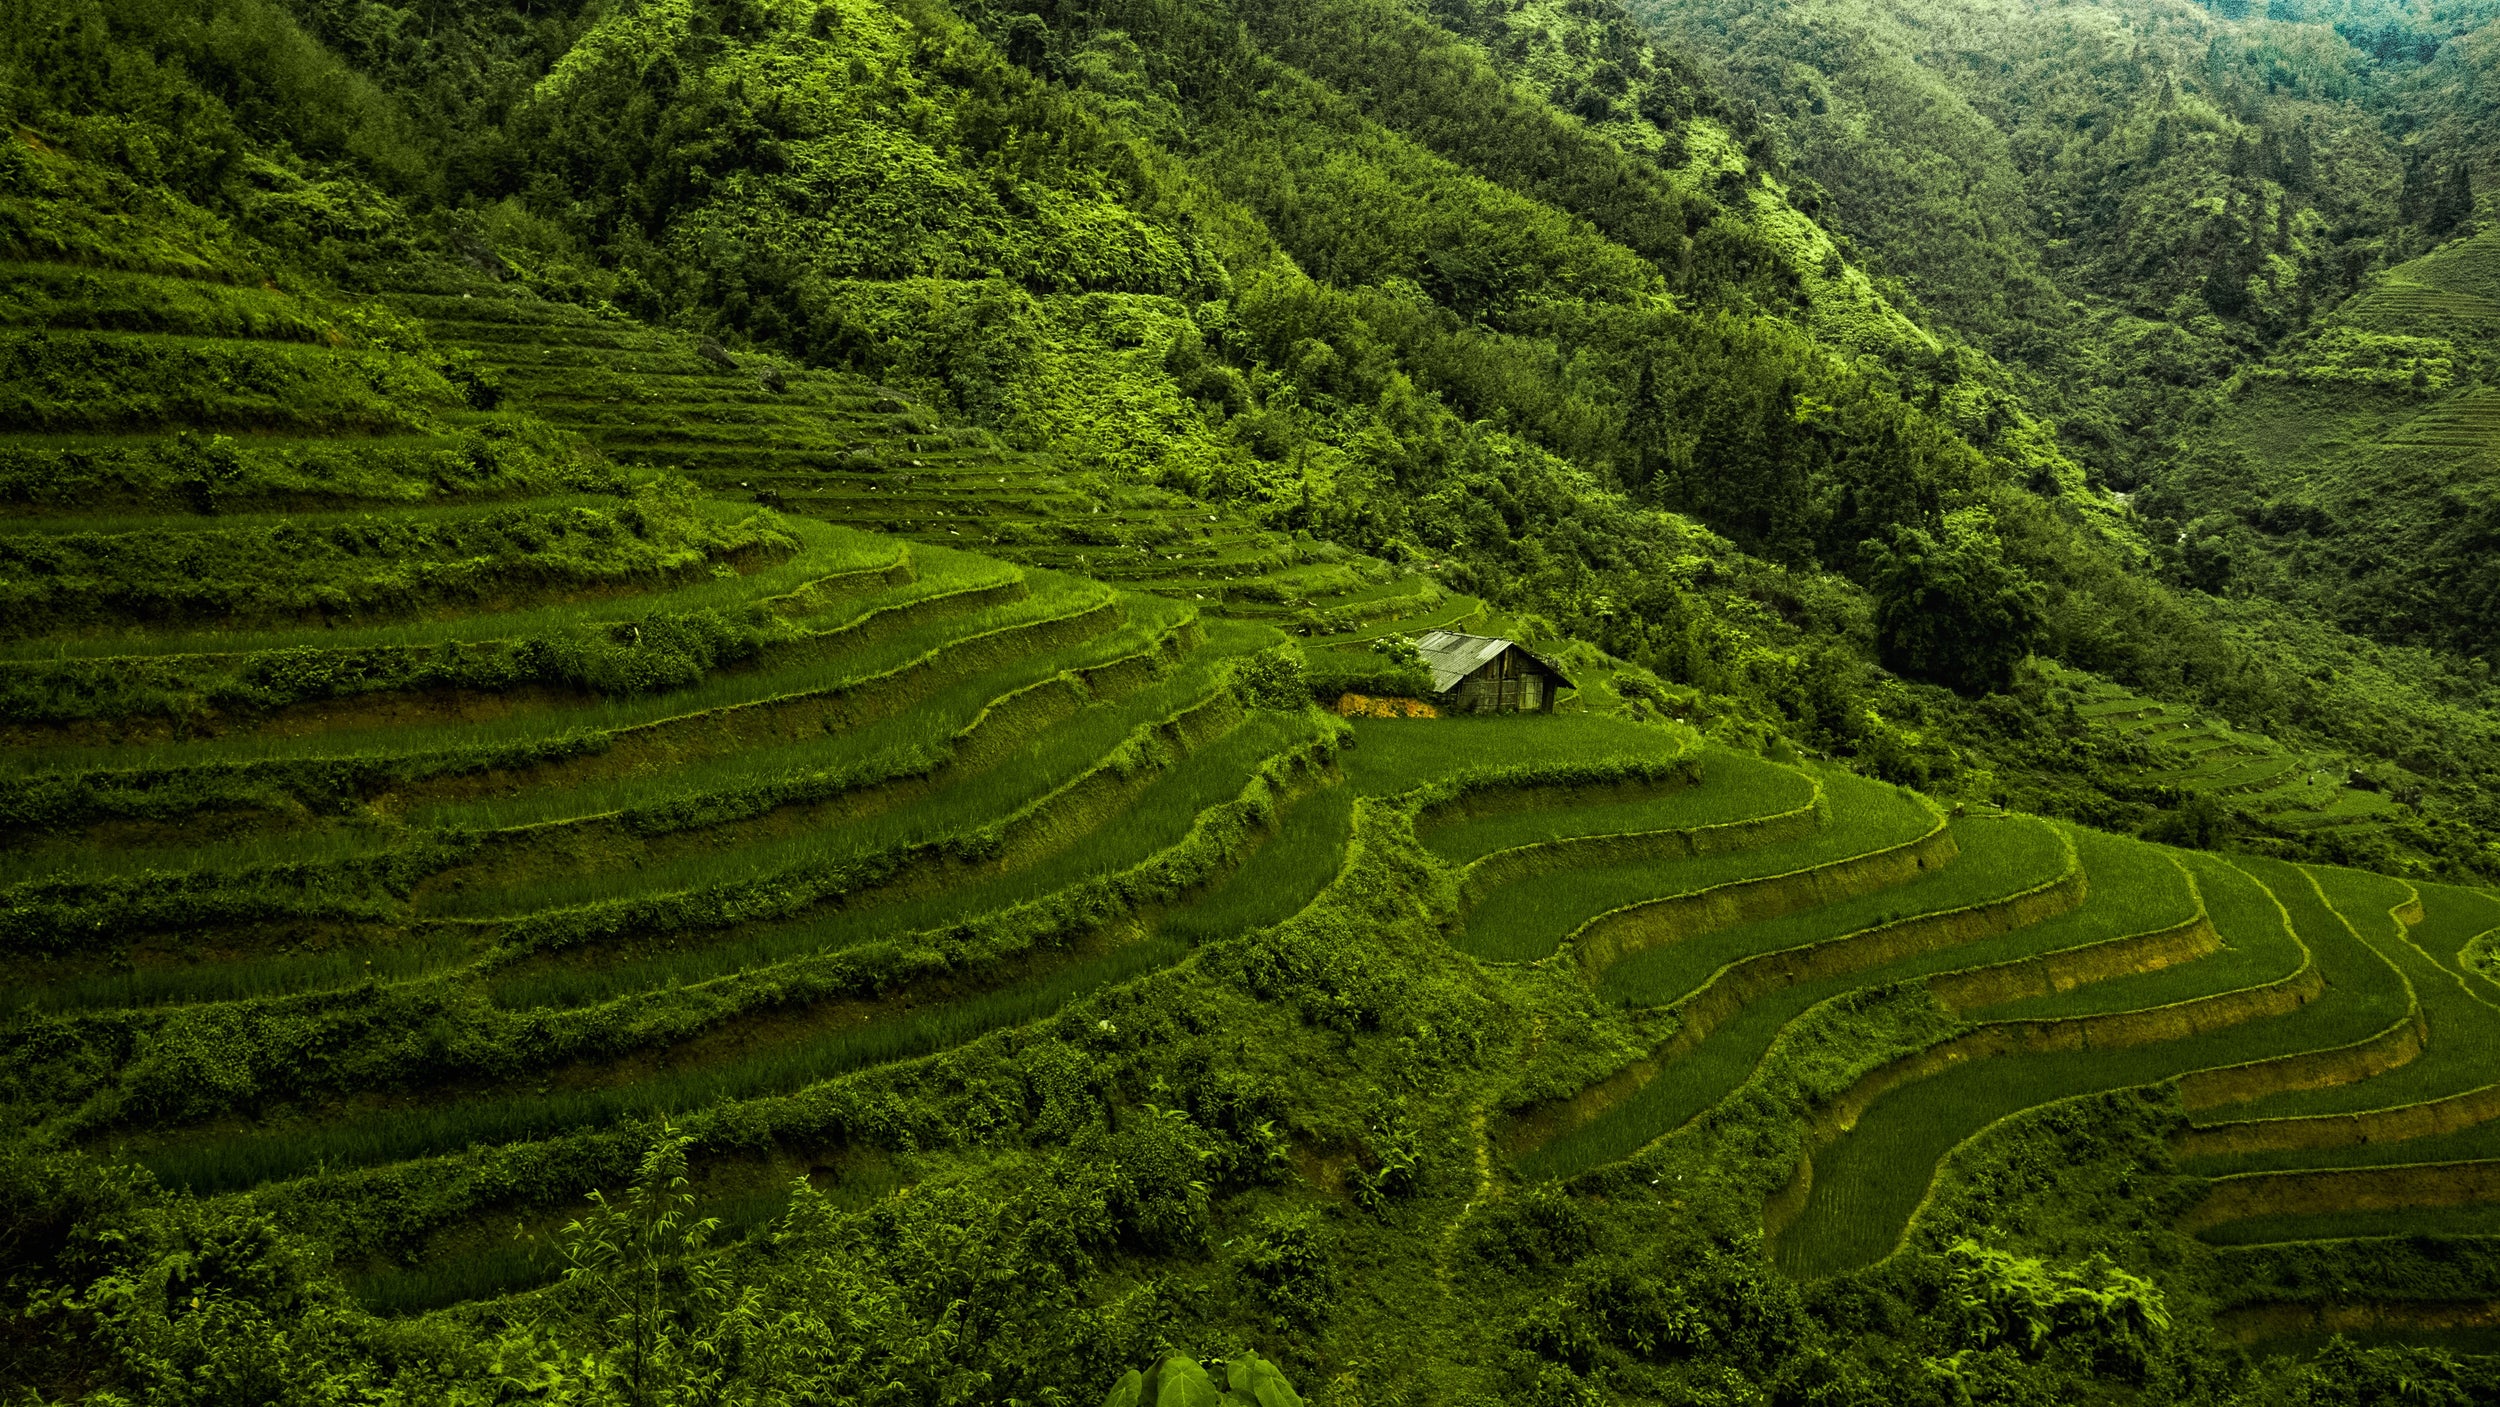 l'immagine mostra una piantagione di caffè in Vietnam